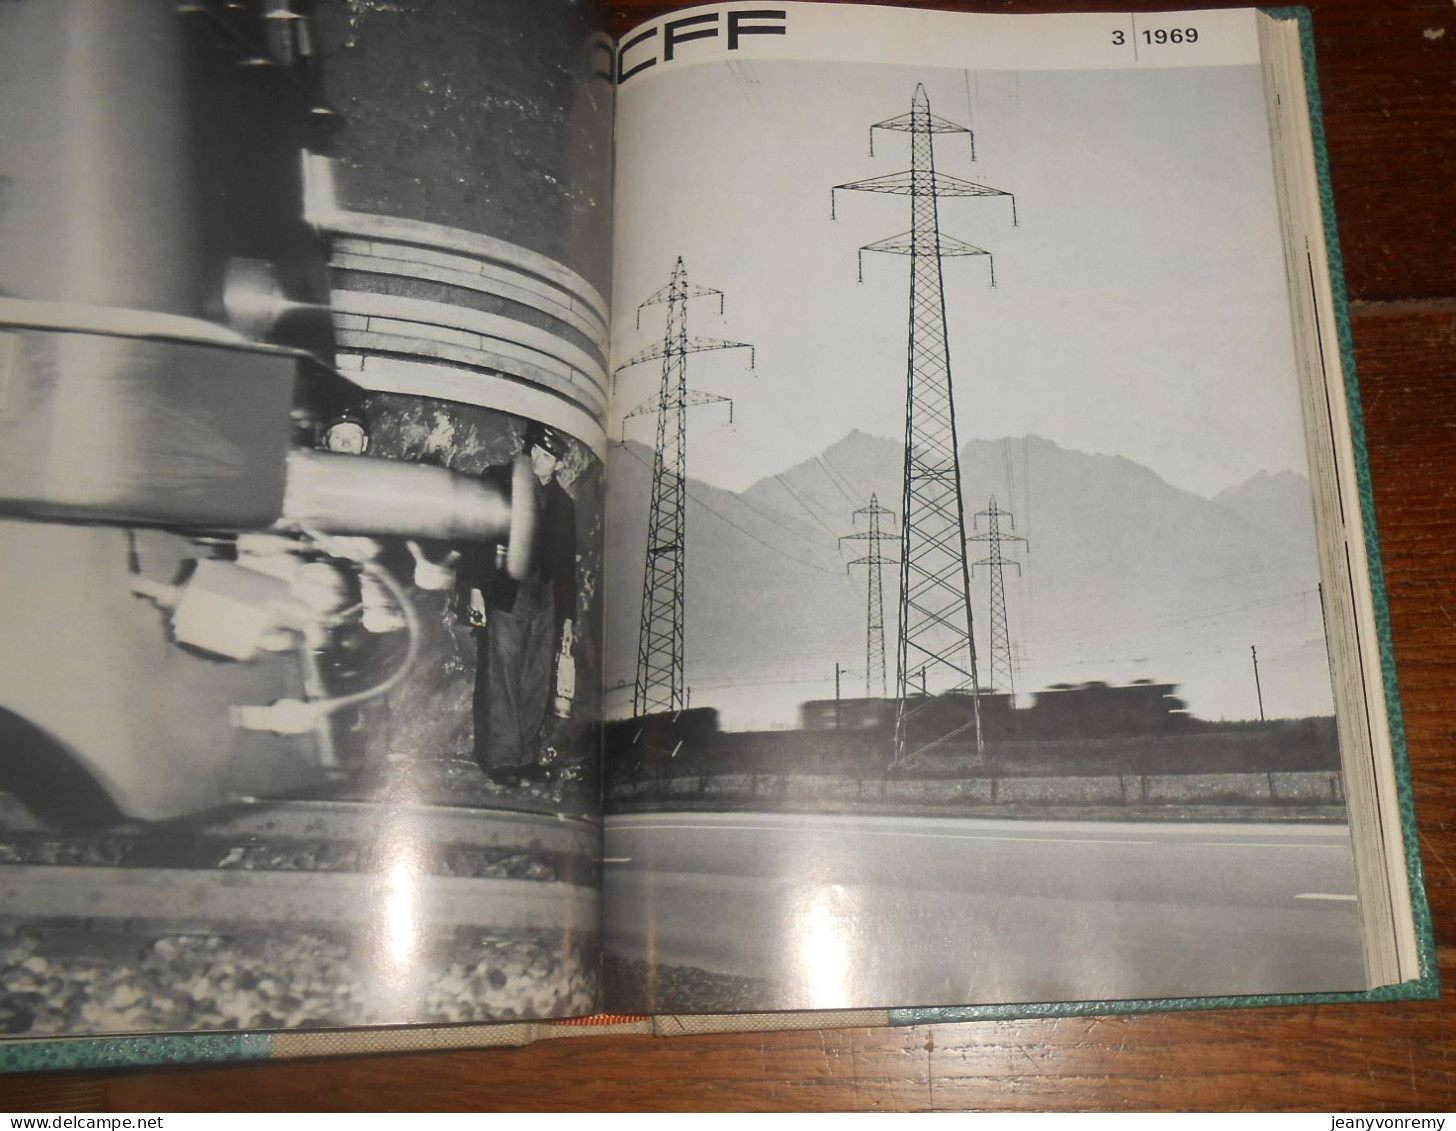 CFF. 24 revues reliées.1/1968 à 12/1969.